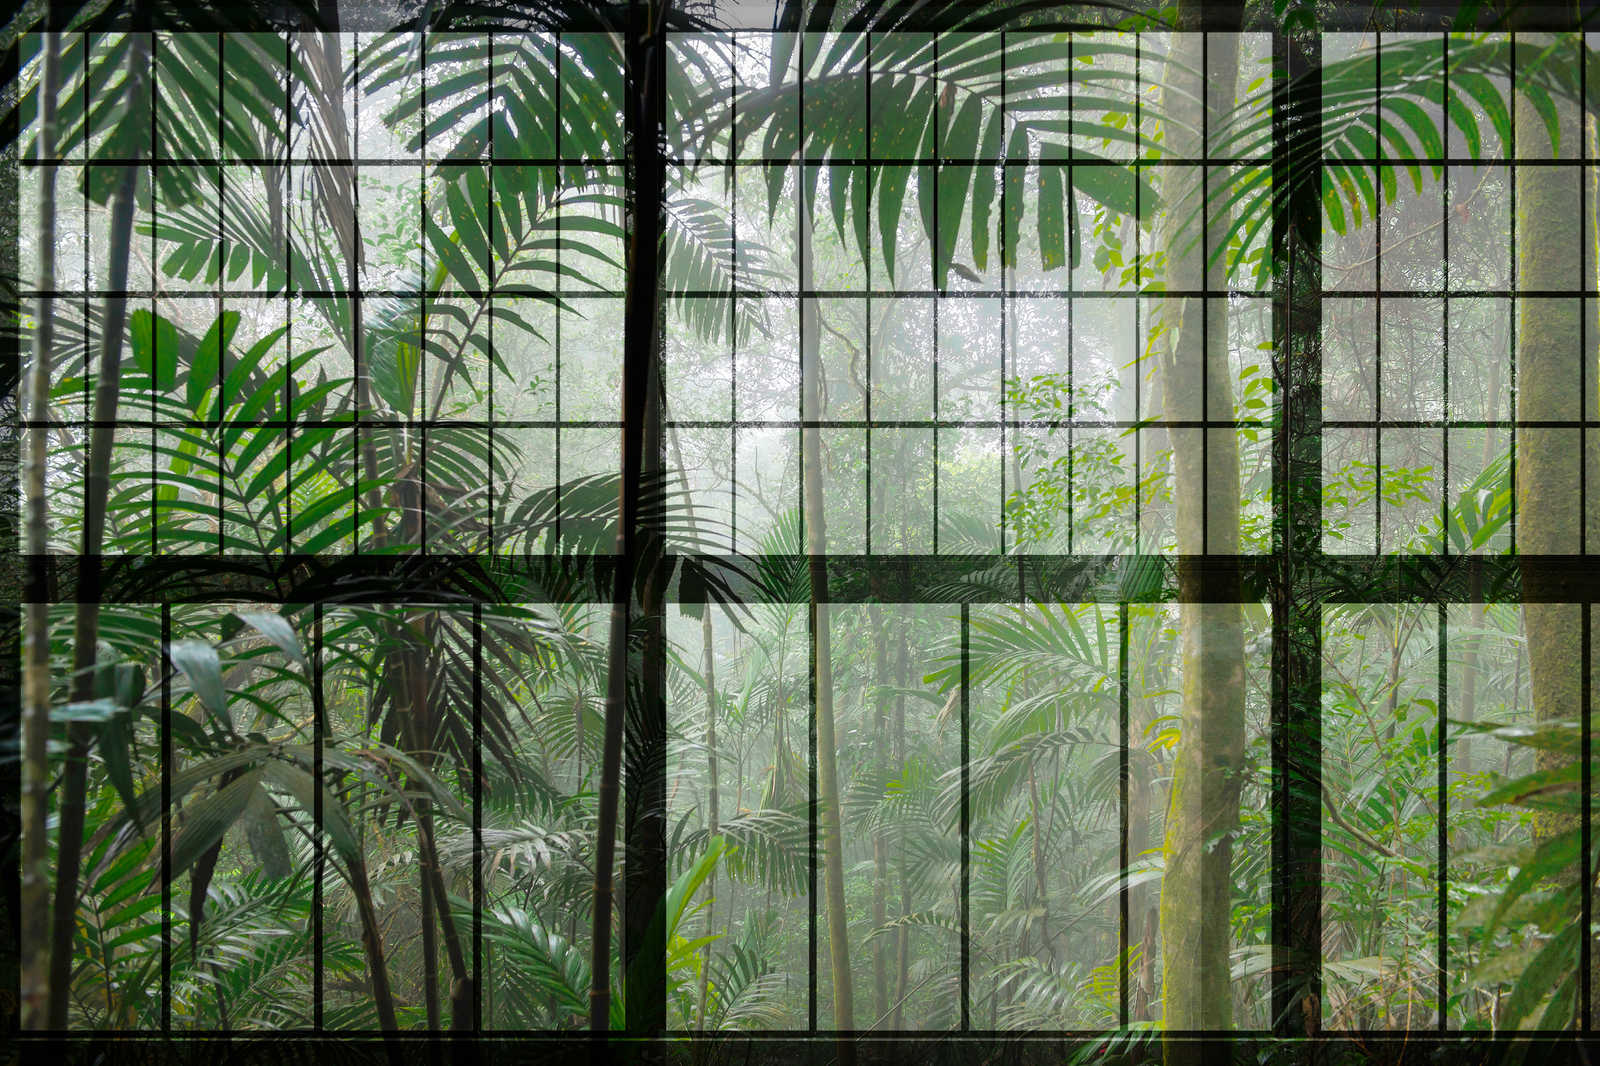             Rainforest 1 - Loft raam canvas schilderij met uitzicht op de jungle - 0.90 m x 0.60 m
        